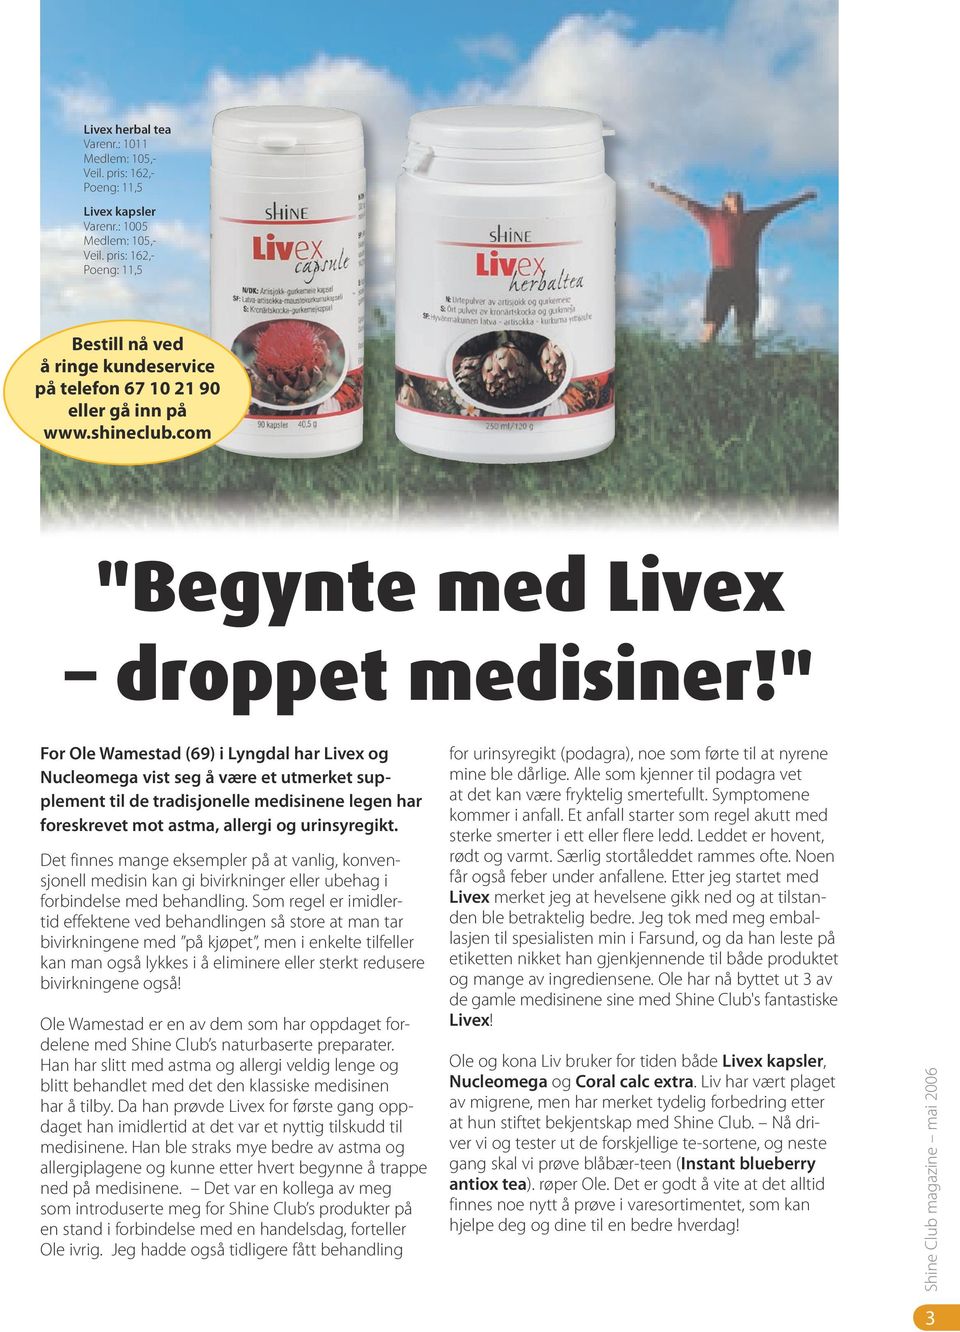 " For Ole Wamestad (69) i Lyngdal har Livex og Nucleomega vist seg å være et utmerket supplement til de tradisjonelle medisinene legen har foreskrevet mot astma, allergi og urinsyregikt.